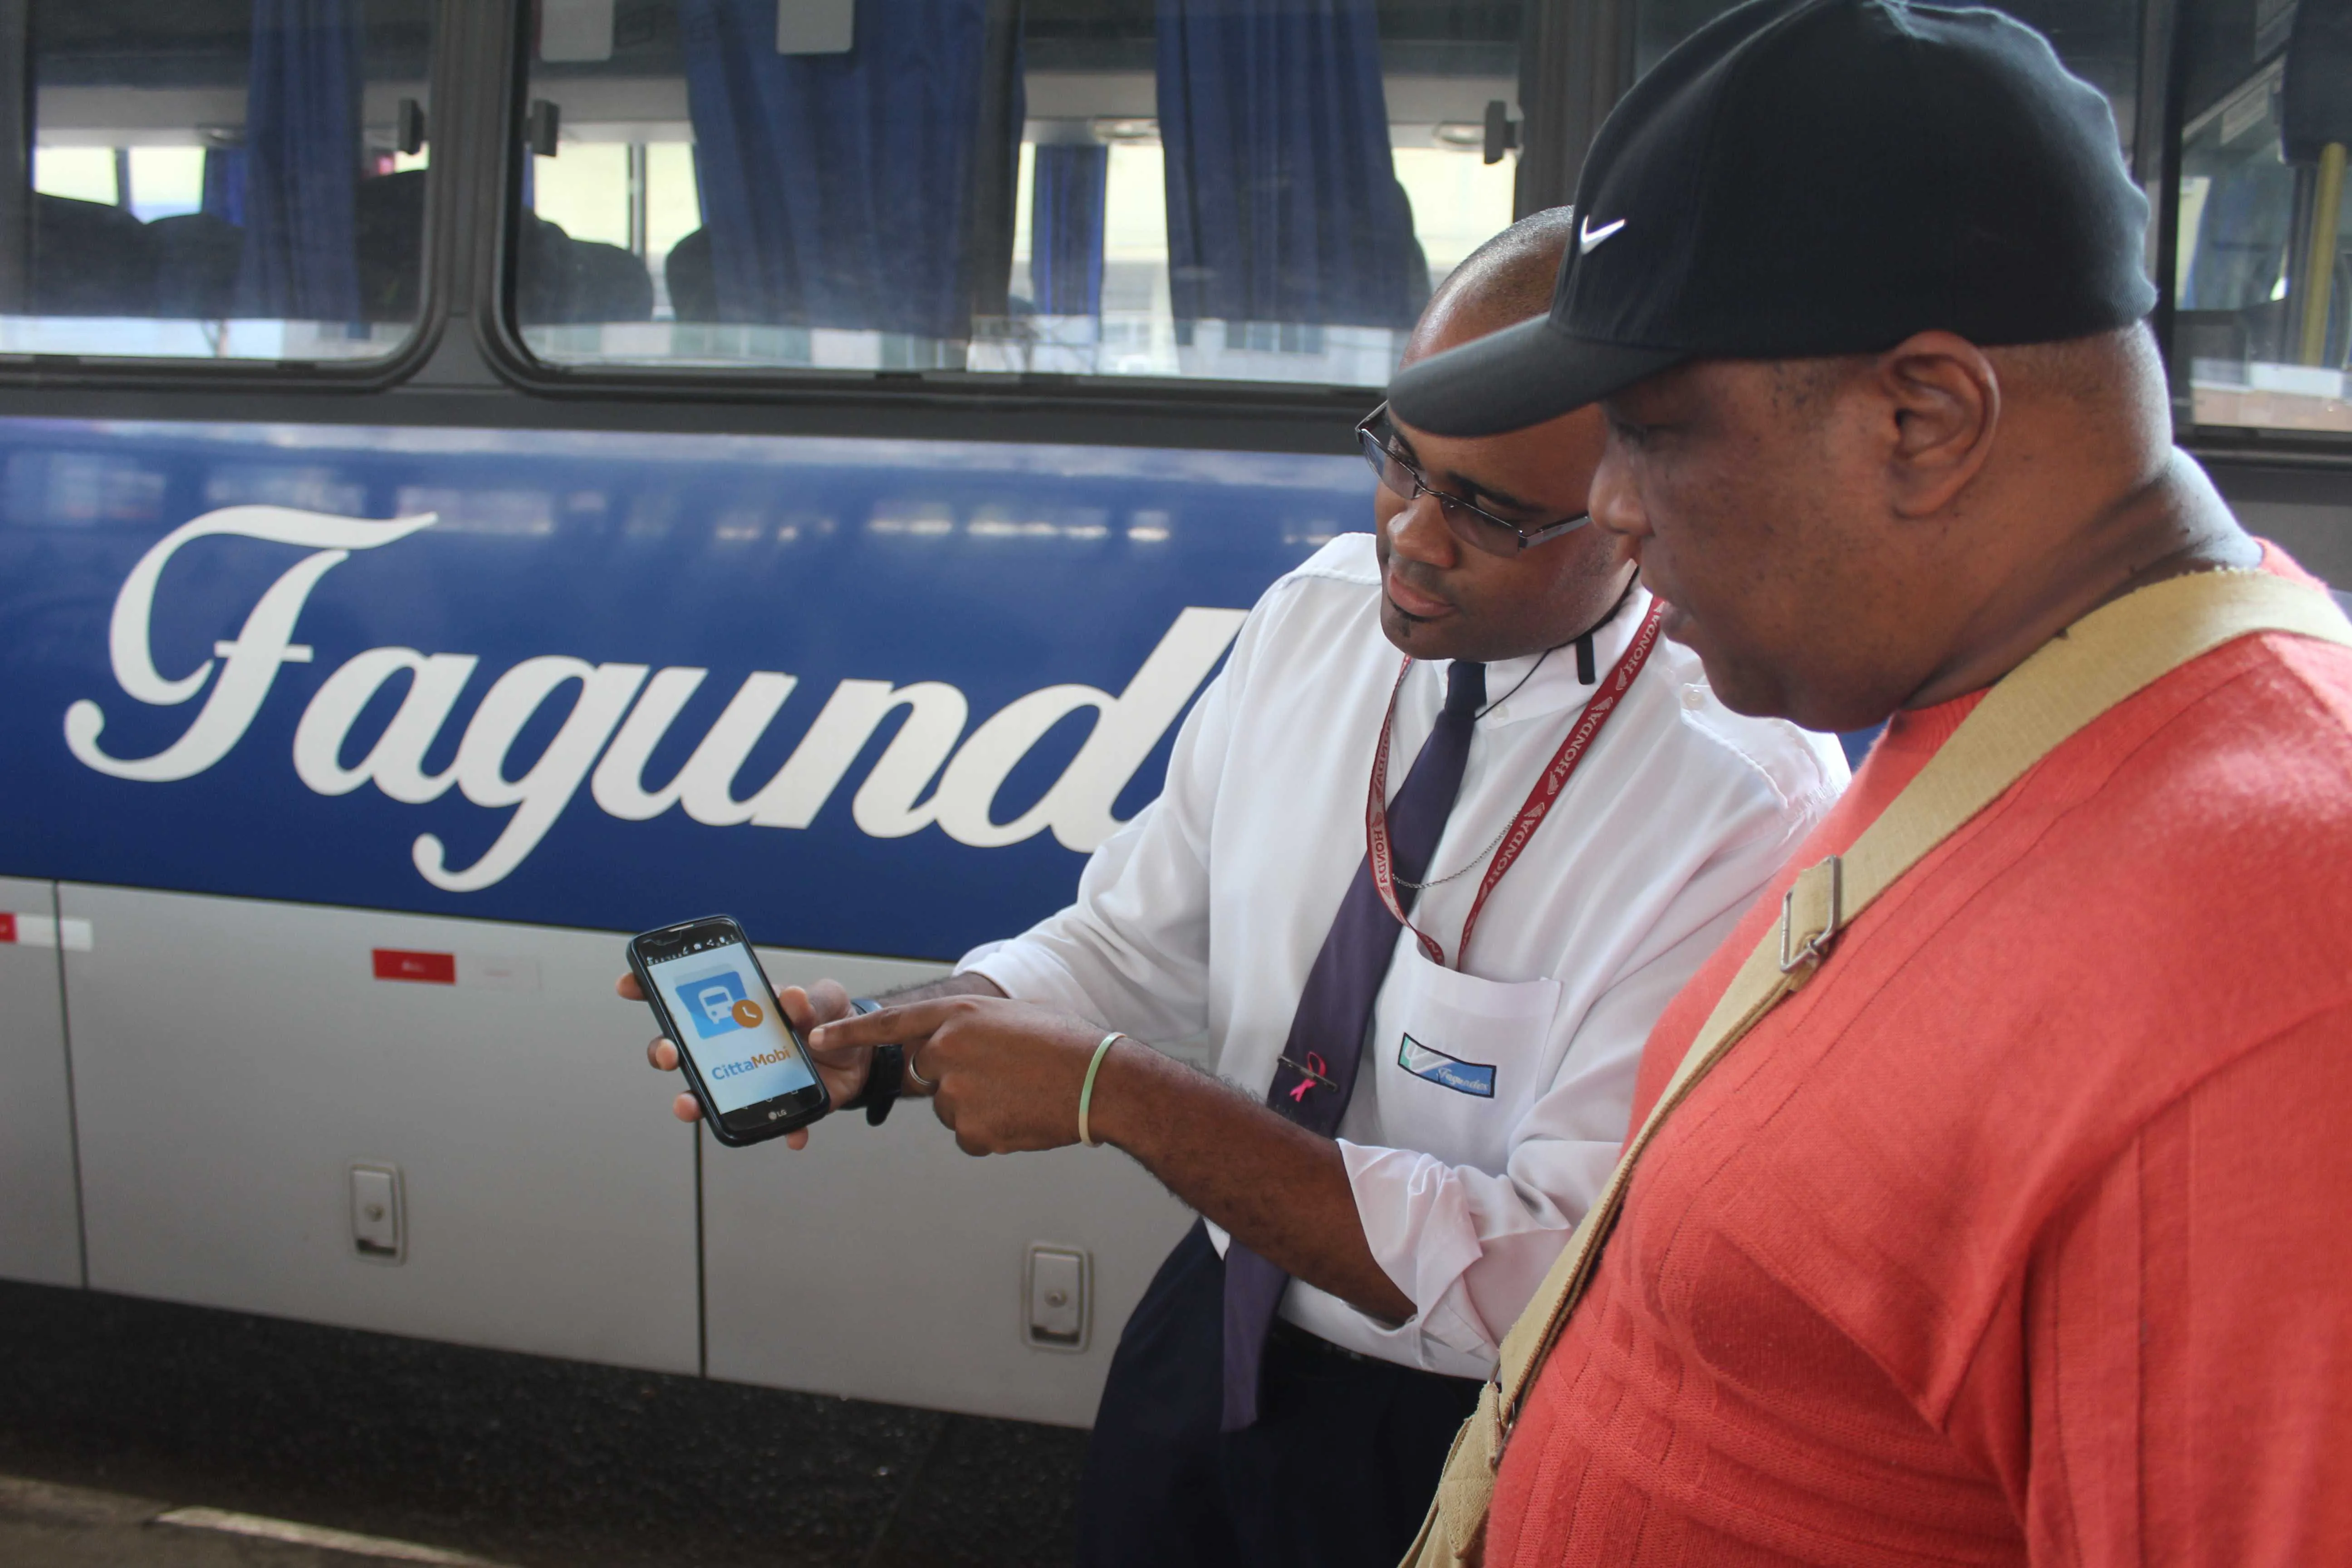 A ferramenta tecnológica ajuda os passageiros a calcularem o tempo exato de espera nos pontos dos ônibus